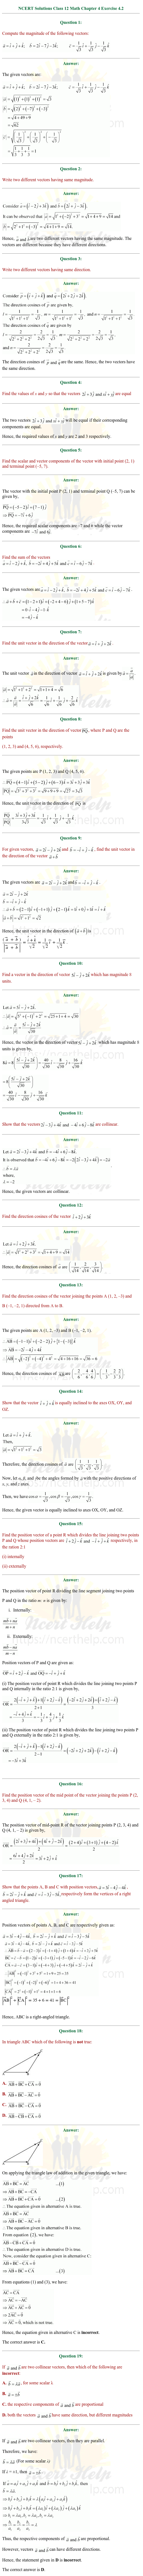 ex.10.2 Class 12 Math Chapter 10 ncert solutions